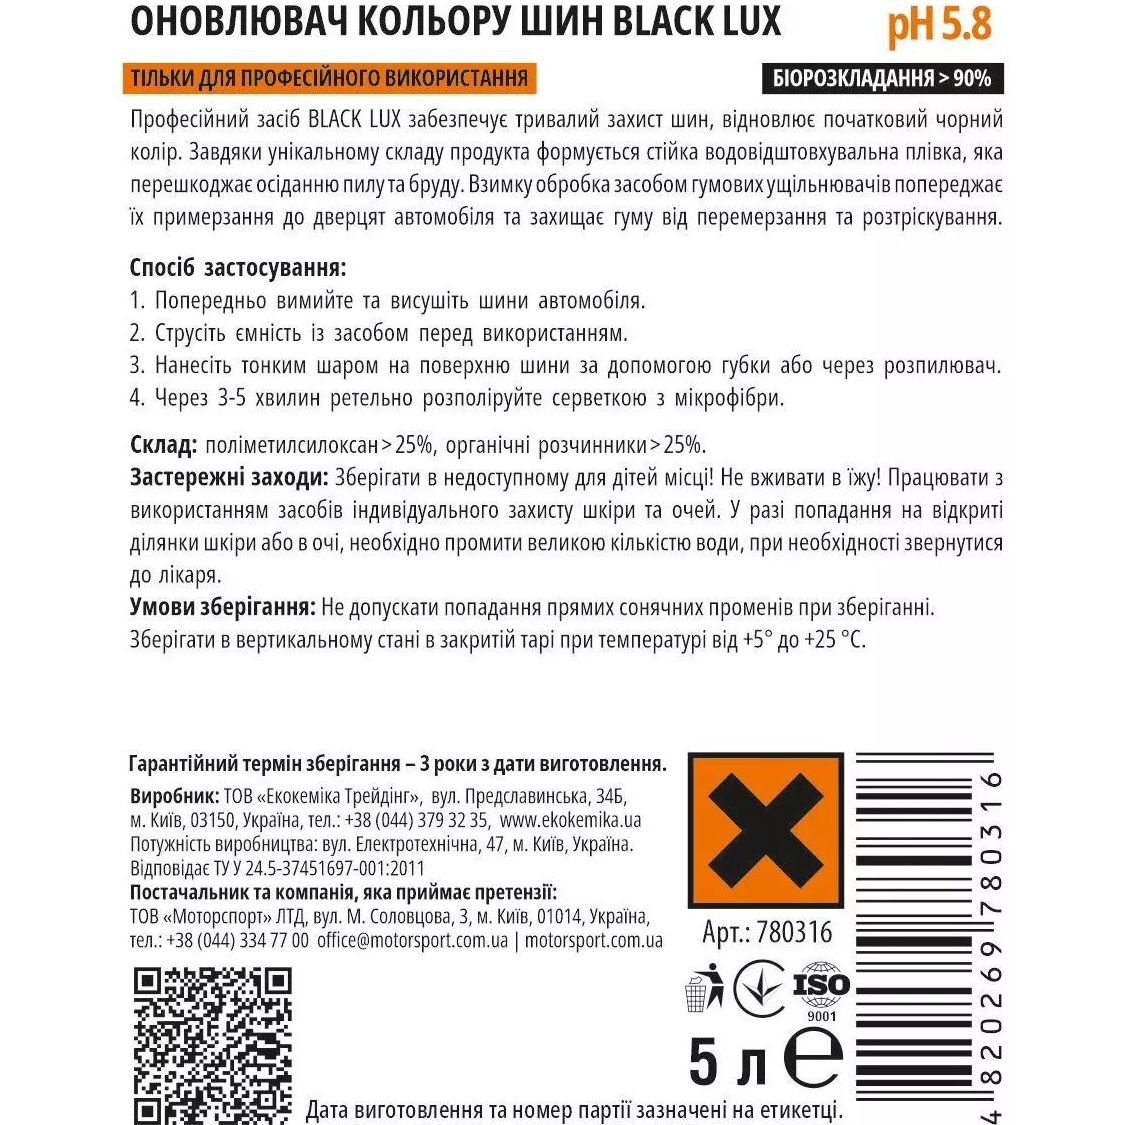 Оновлювач кольору шин Ekokemika Pro Line Black Lux, 5 л (780316) - фото 2